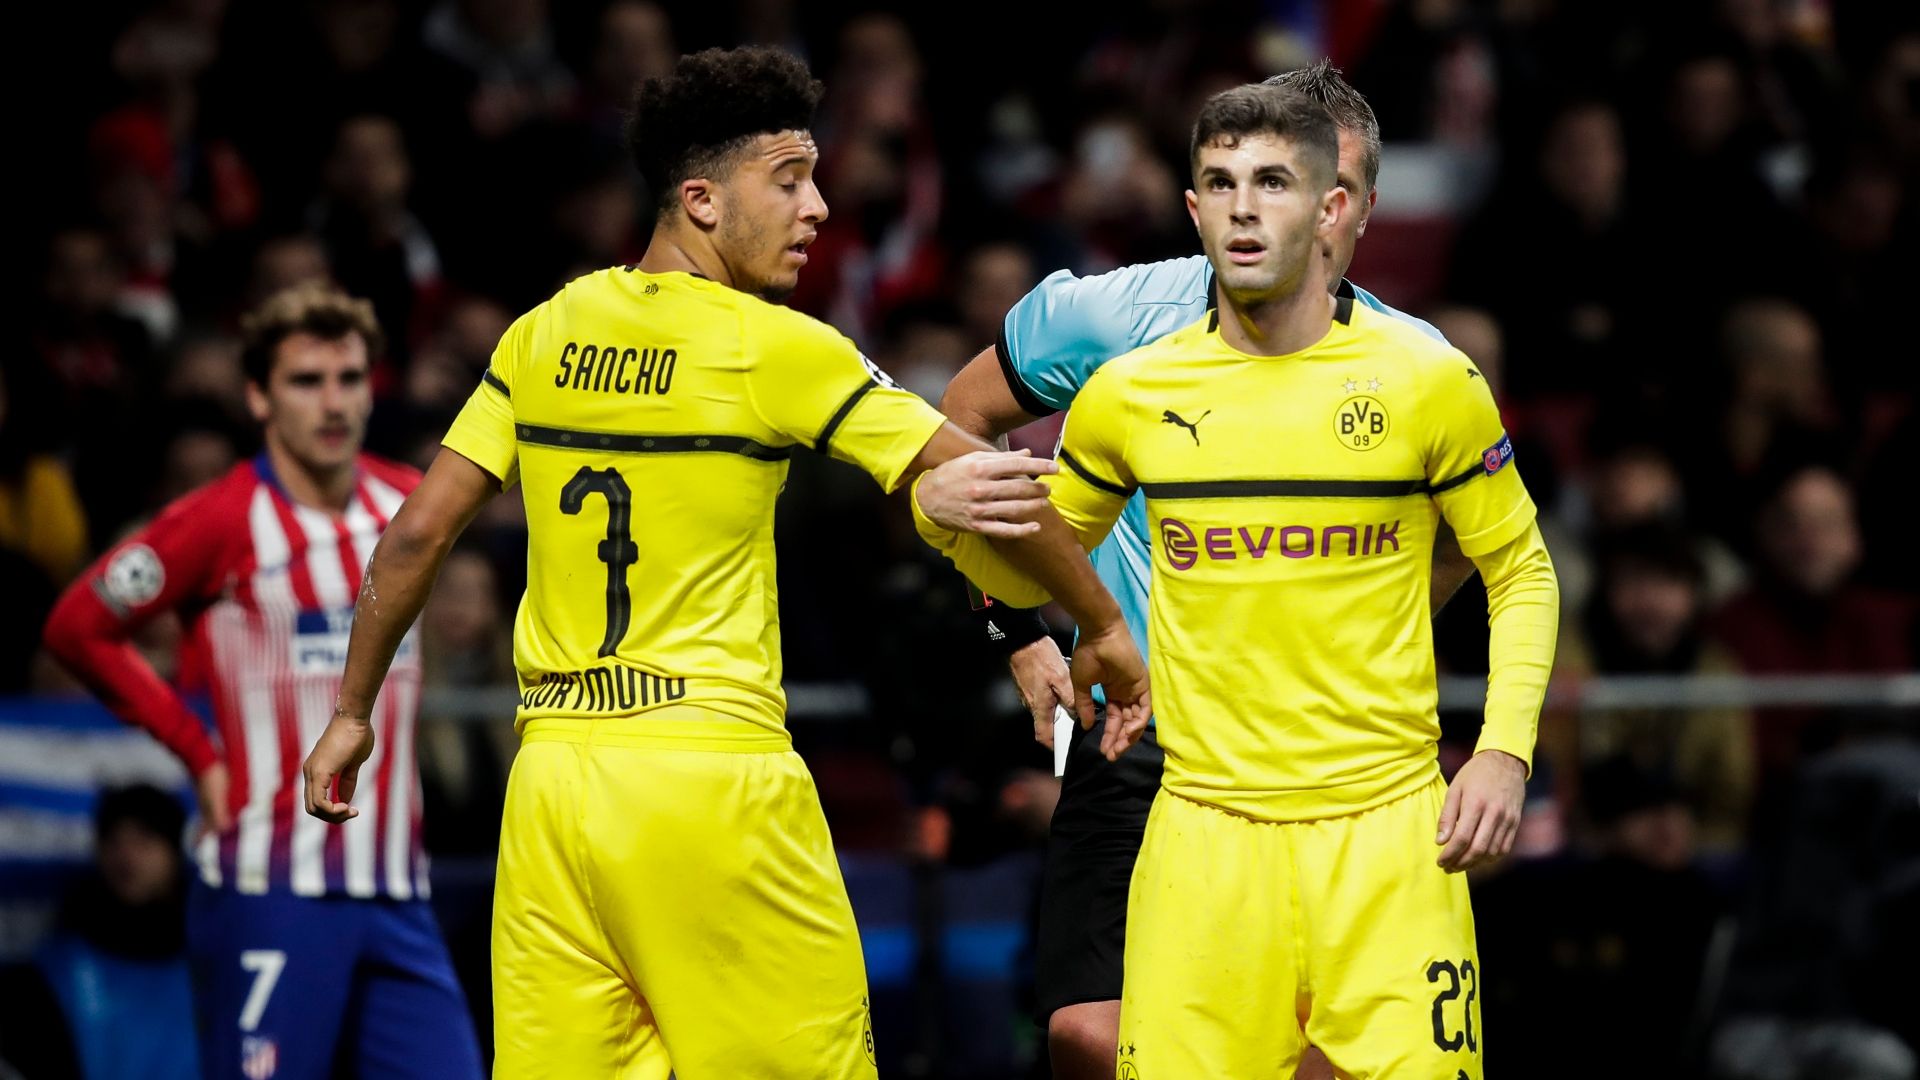 دورتموند- آلمان- بوندس لیگا- زنبورها- Borussia Dortmund- Germany- United States- Bundesliga